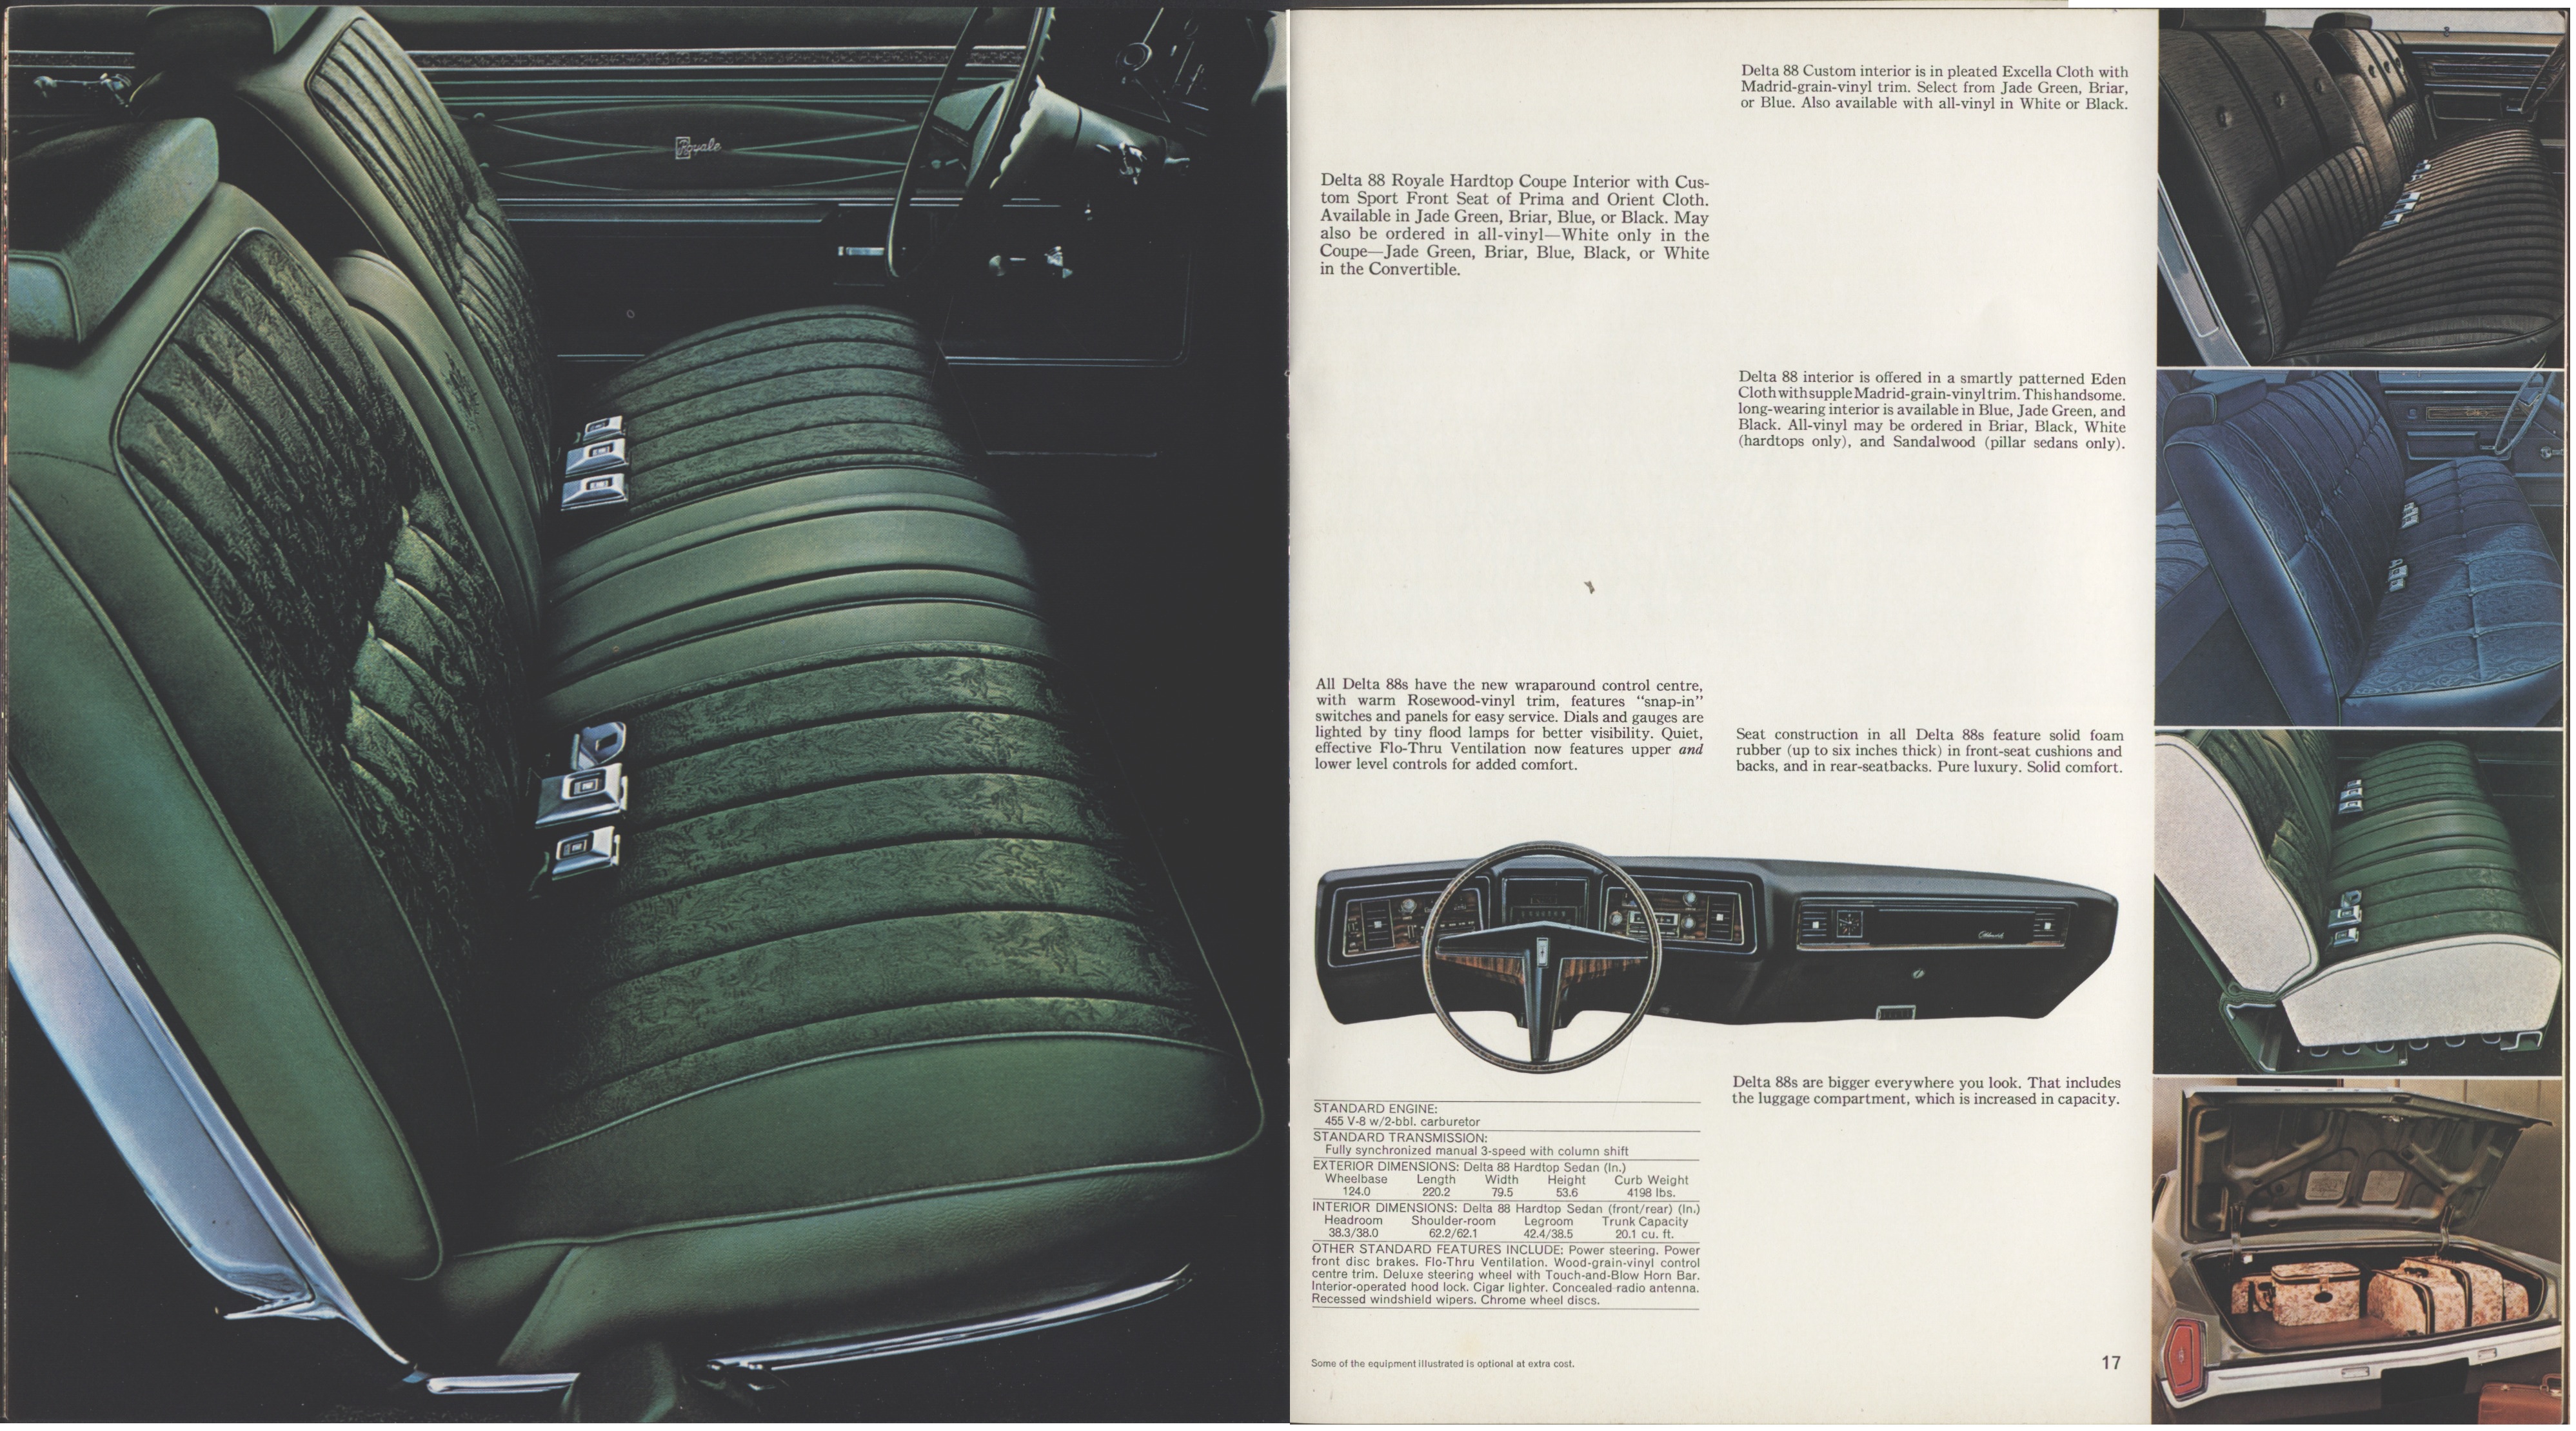 1971 Oldsmobile Full Line Brochure (Cdn) 16-17